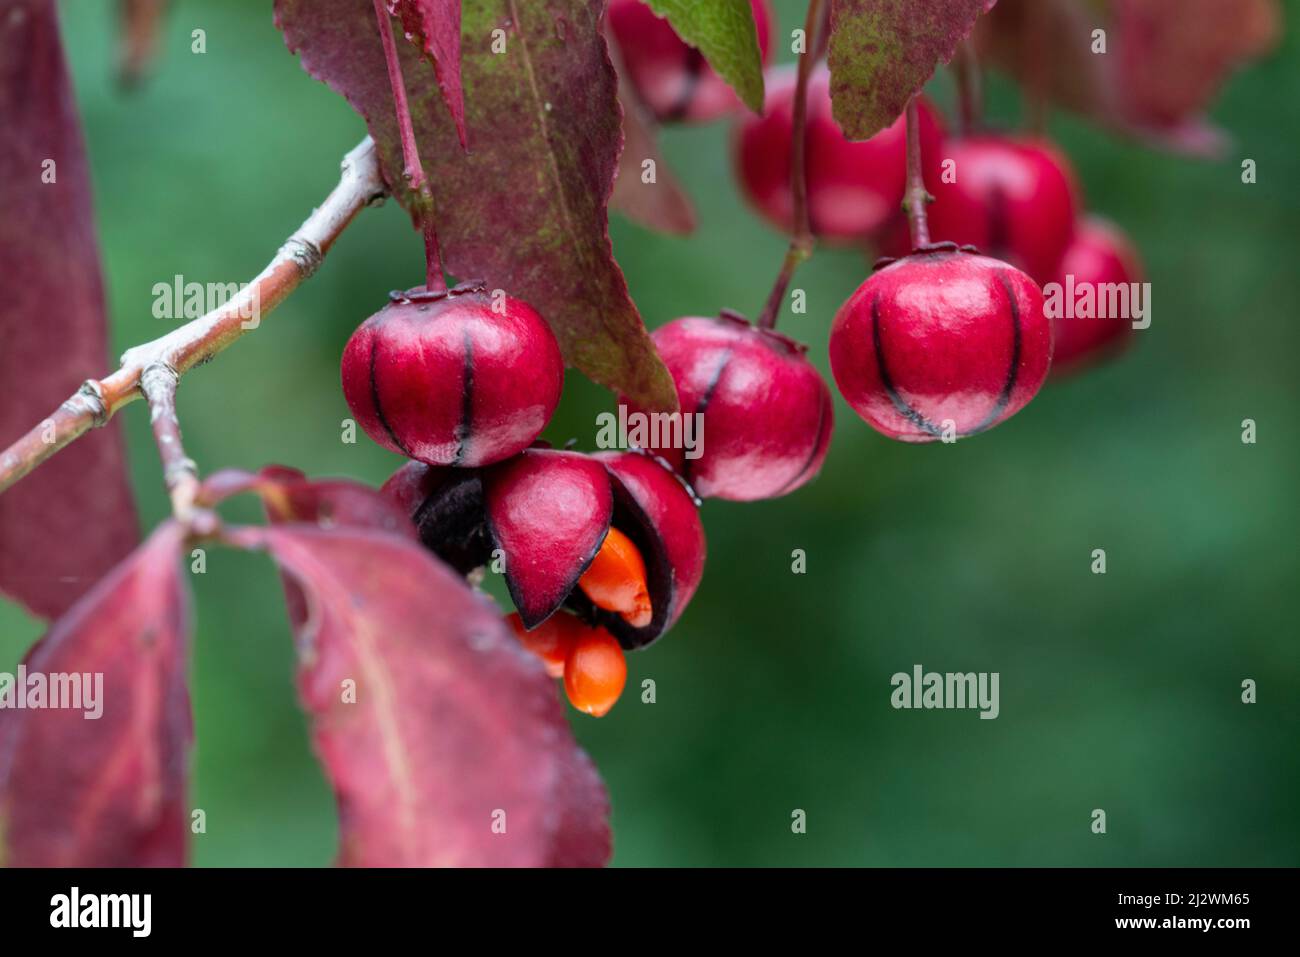 Korean spindle tree (Euonymus oxyphyllus), fruits, autumn Stock Photo